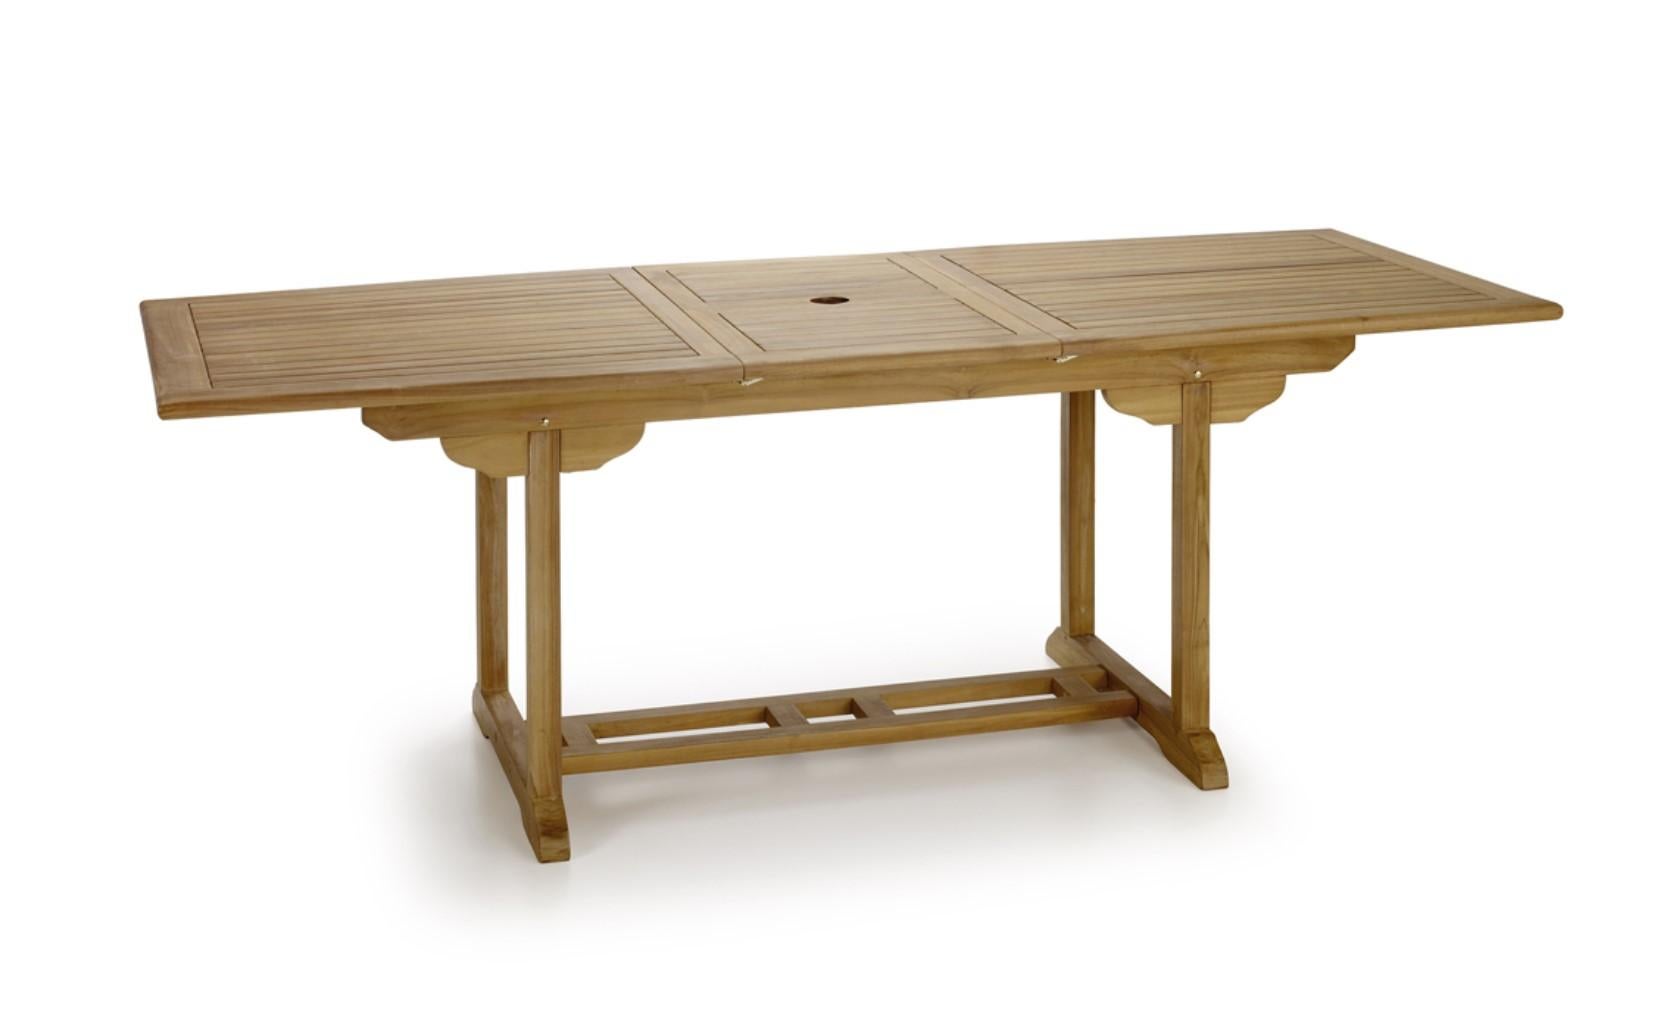 Nouvelle table à manger rectangulaire pliante en teck, pour l'intérieur et l'extérieur

Extensible : 66.92in-86.61in.